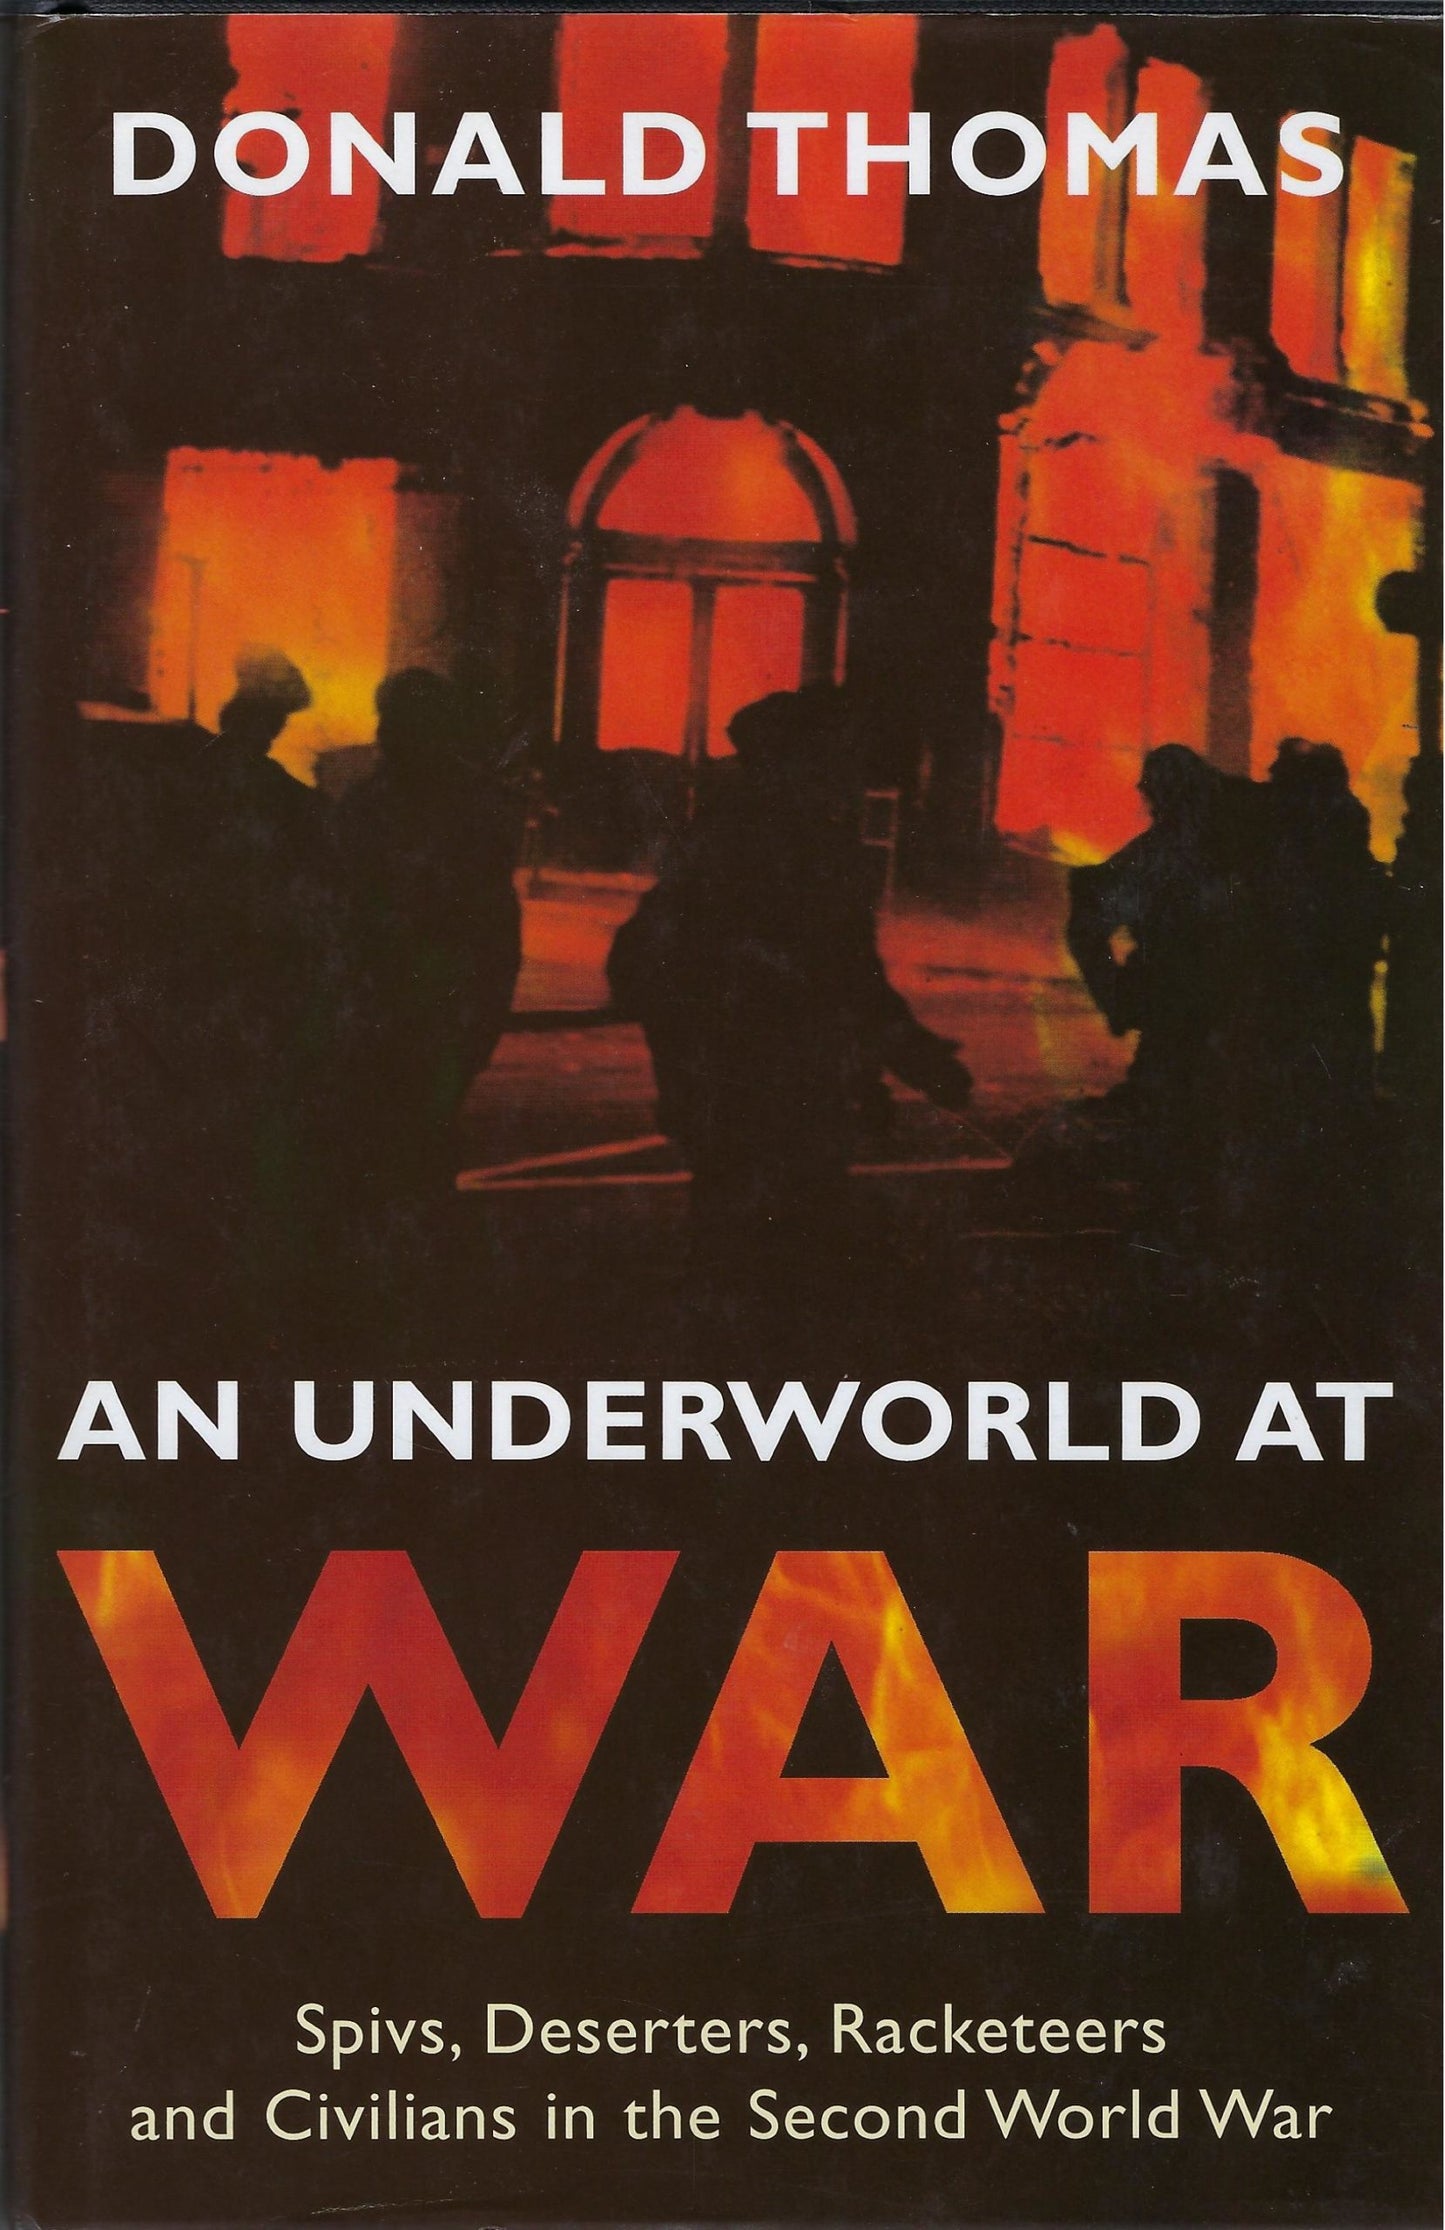 An underworld at War